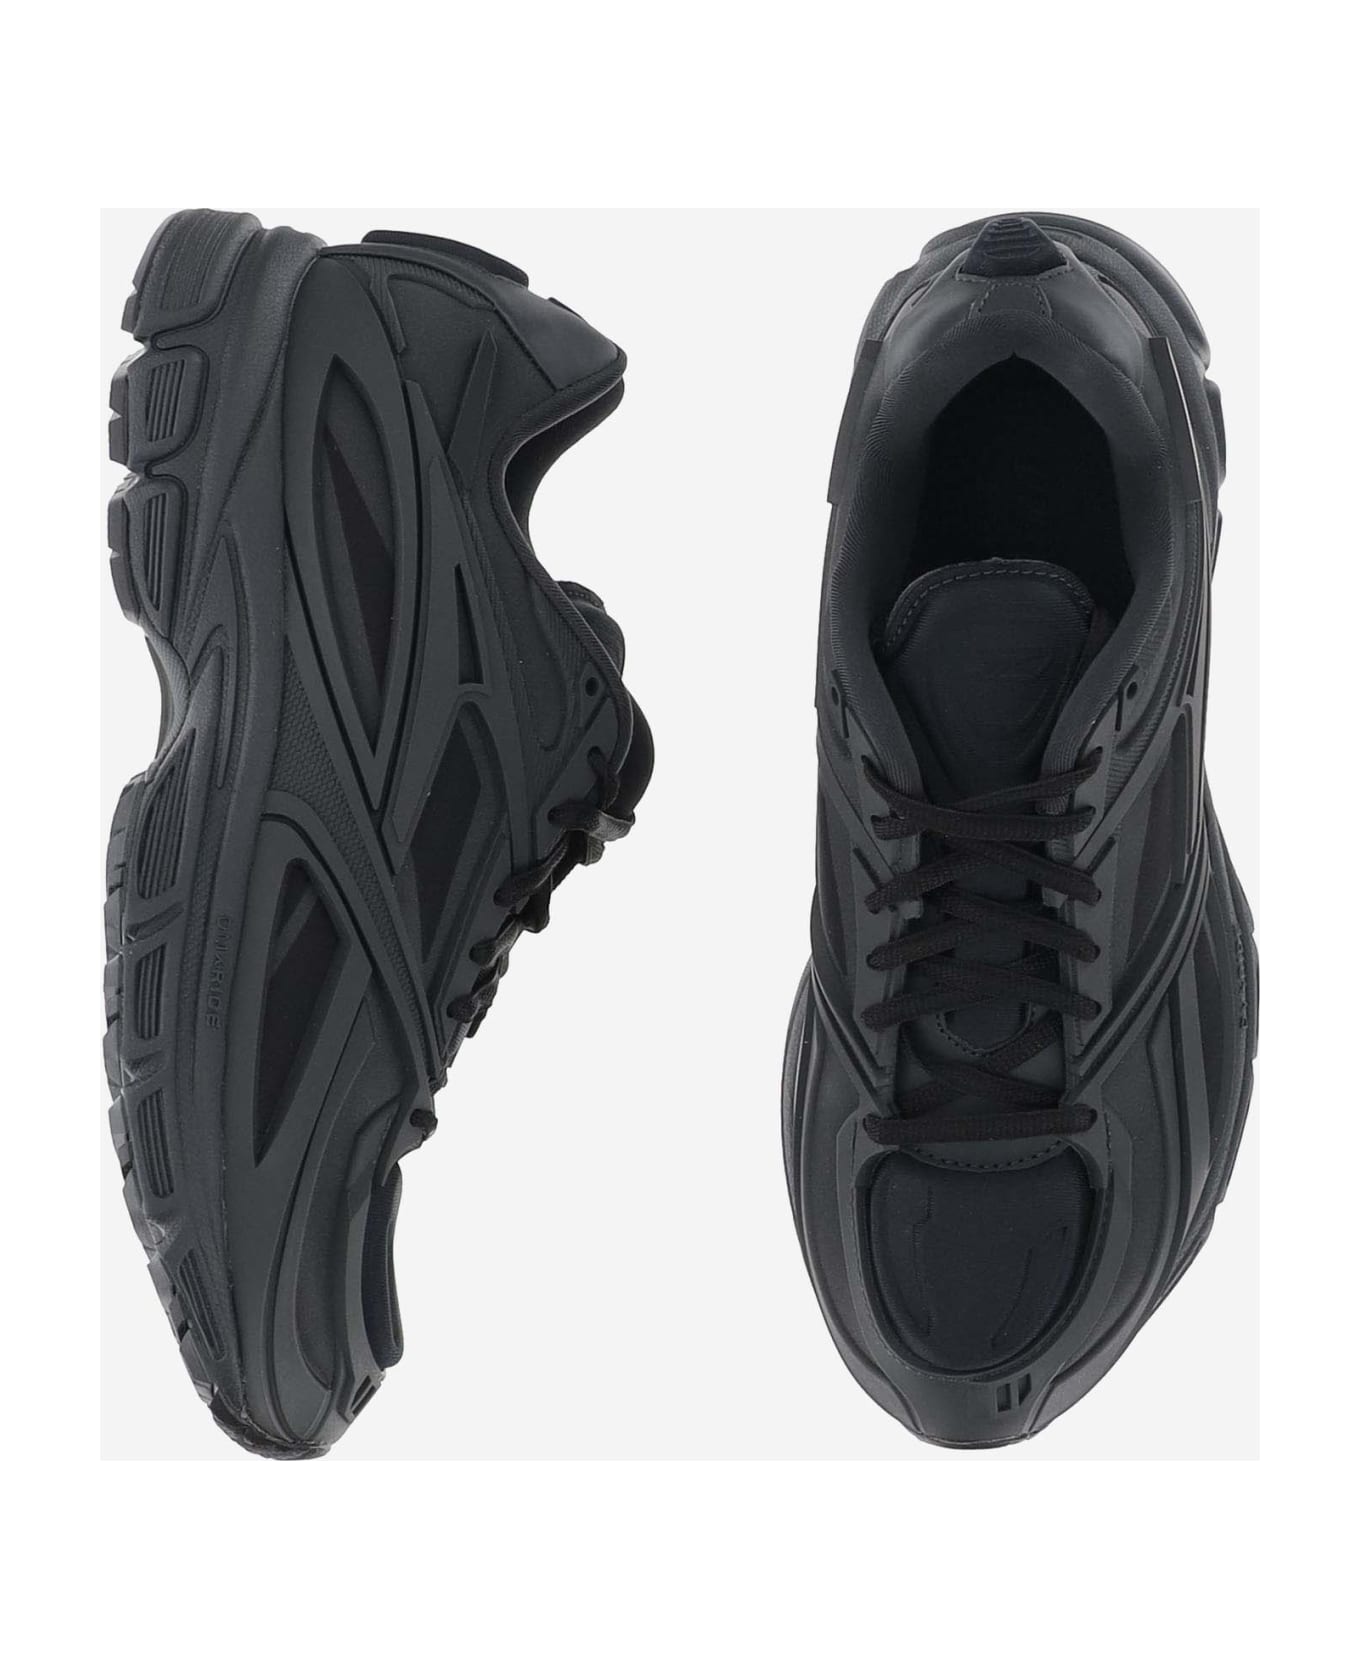 Reebok Premier Road Synthetic Fabric Sneaker - Black